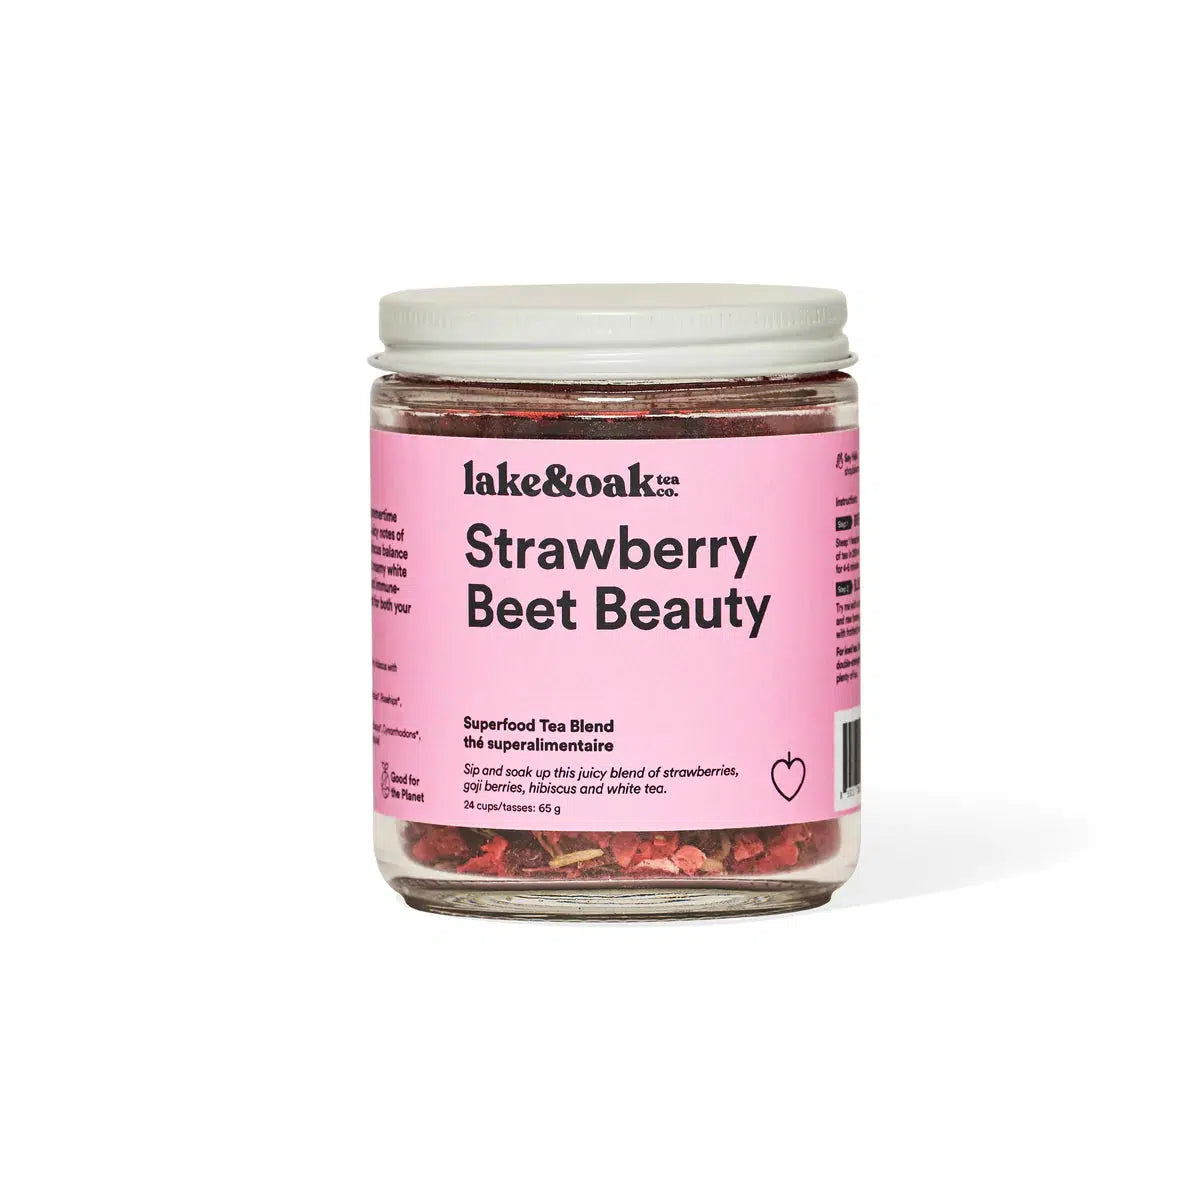 Strawberry Beet Beauty by Lake & Oak Tea Co. Wellness Lake & Oak 24 cups in glass jar Prettycleanshop